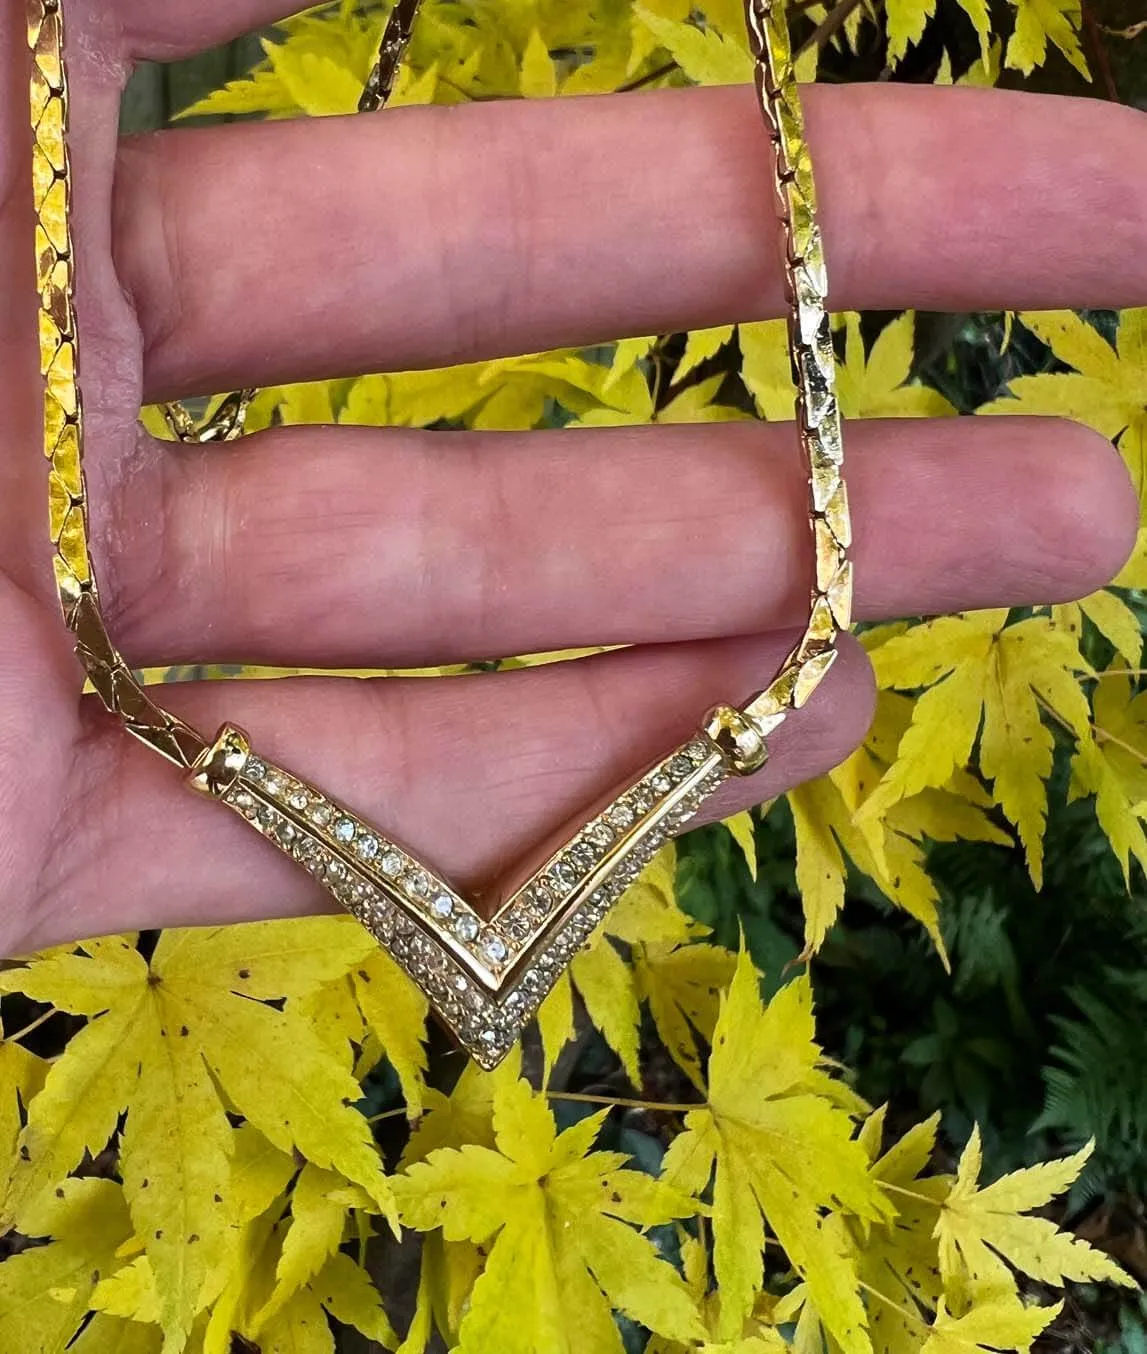 Christian Dior V shape necklace - Findage